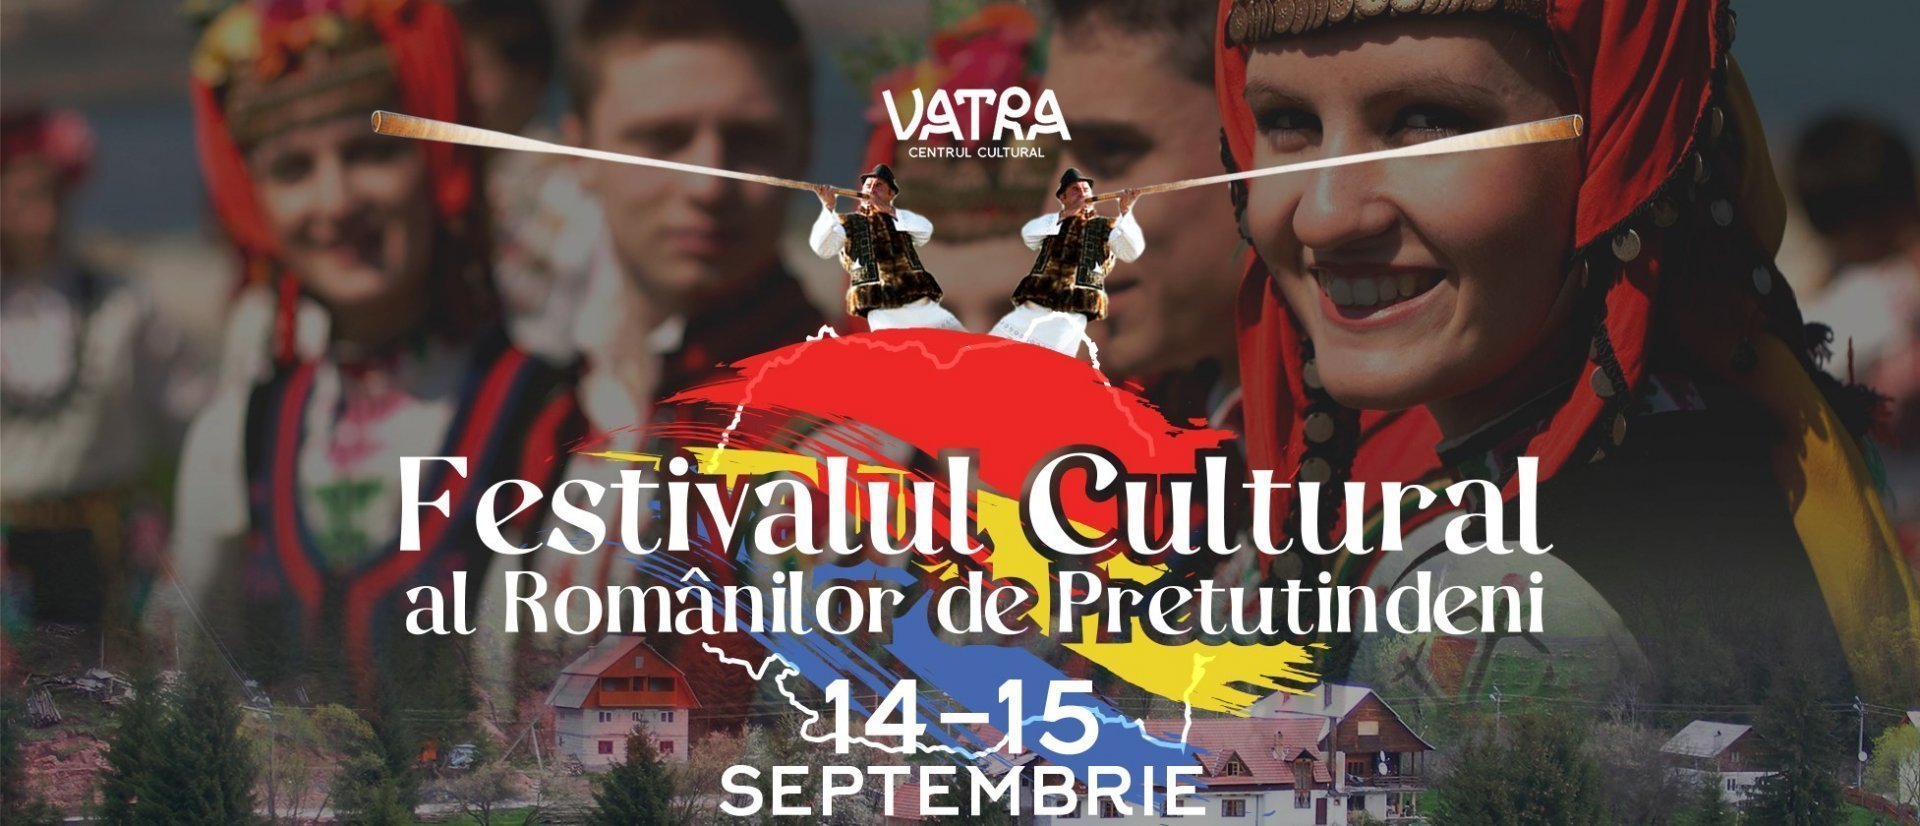 Festivalul Cultural al Romanilor de Pretutindeni